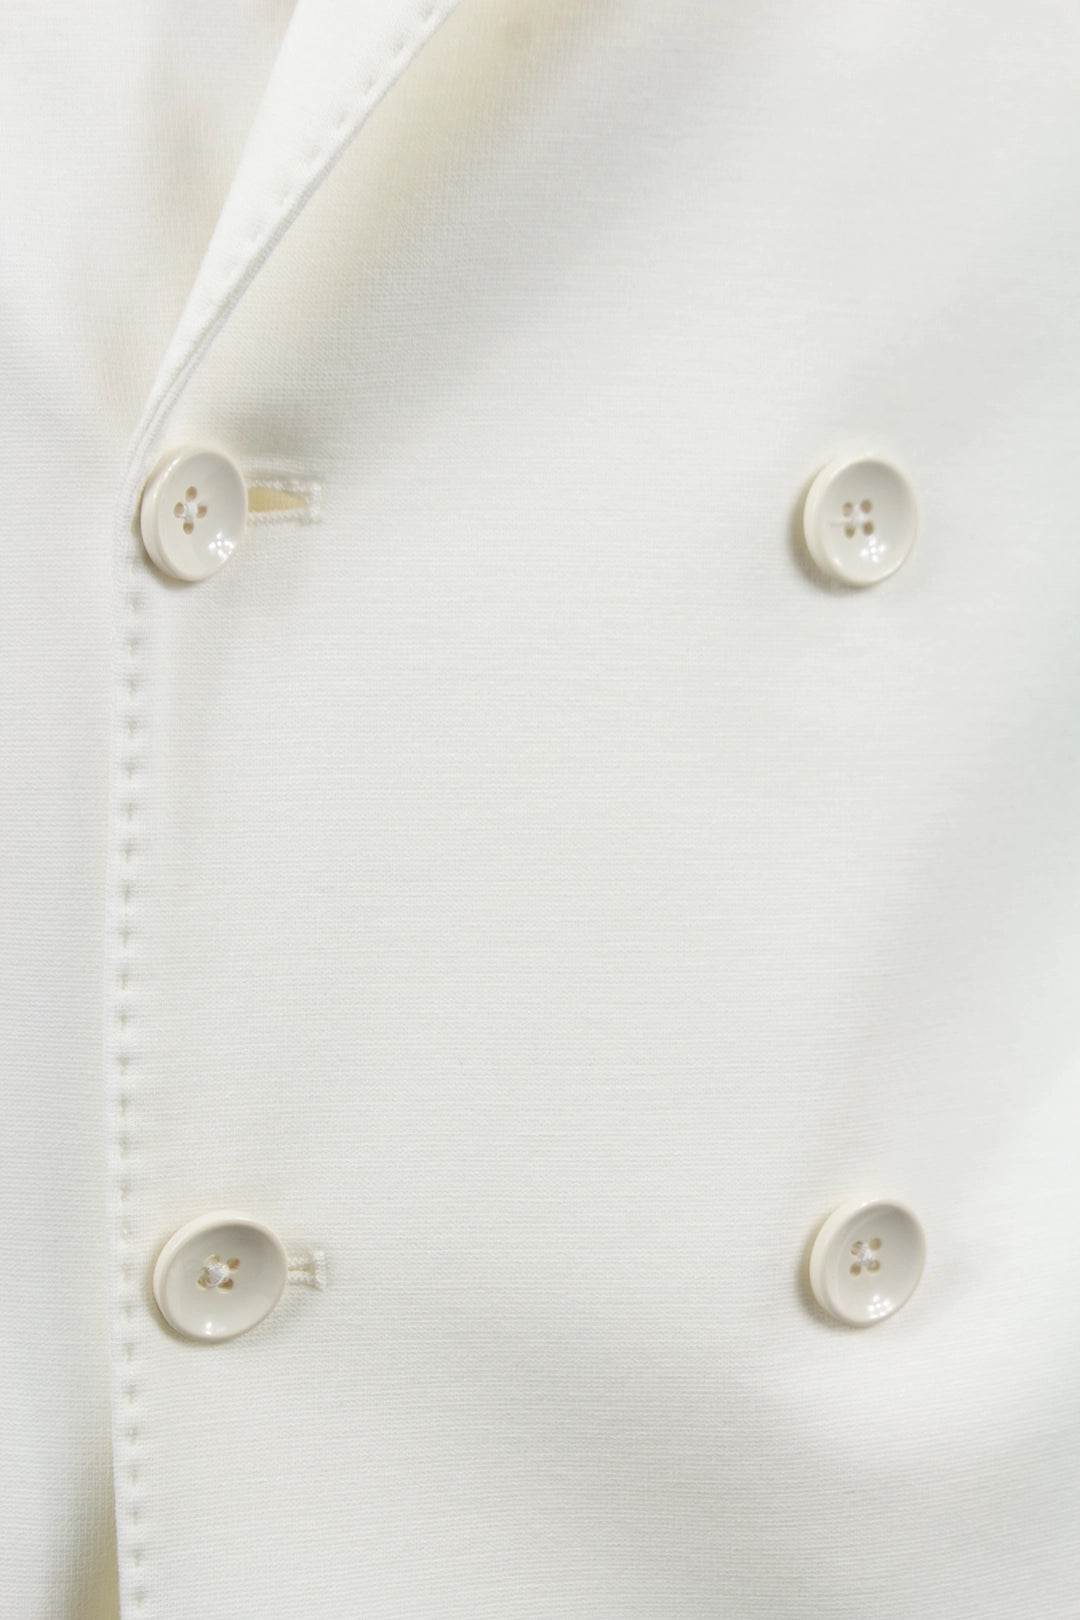 Giacca doppiopetto in jersey bianco bottoni